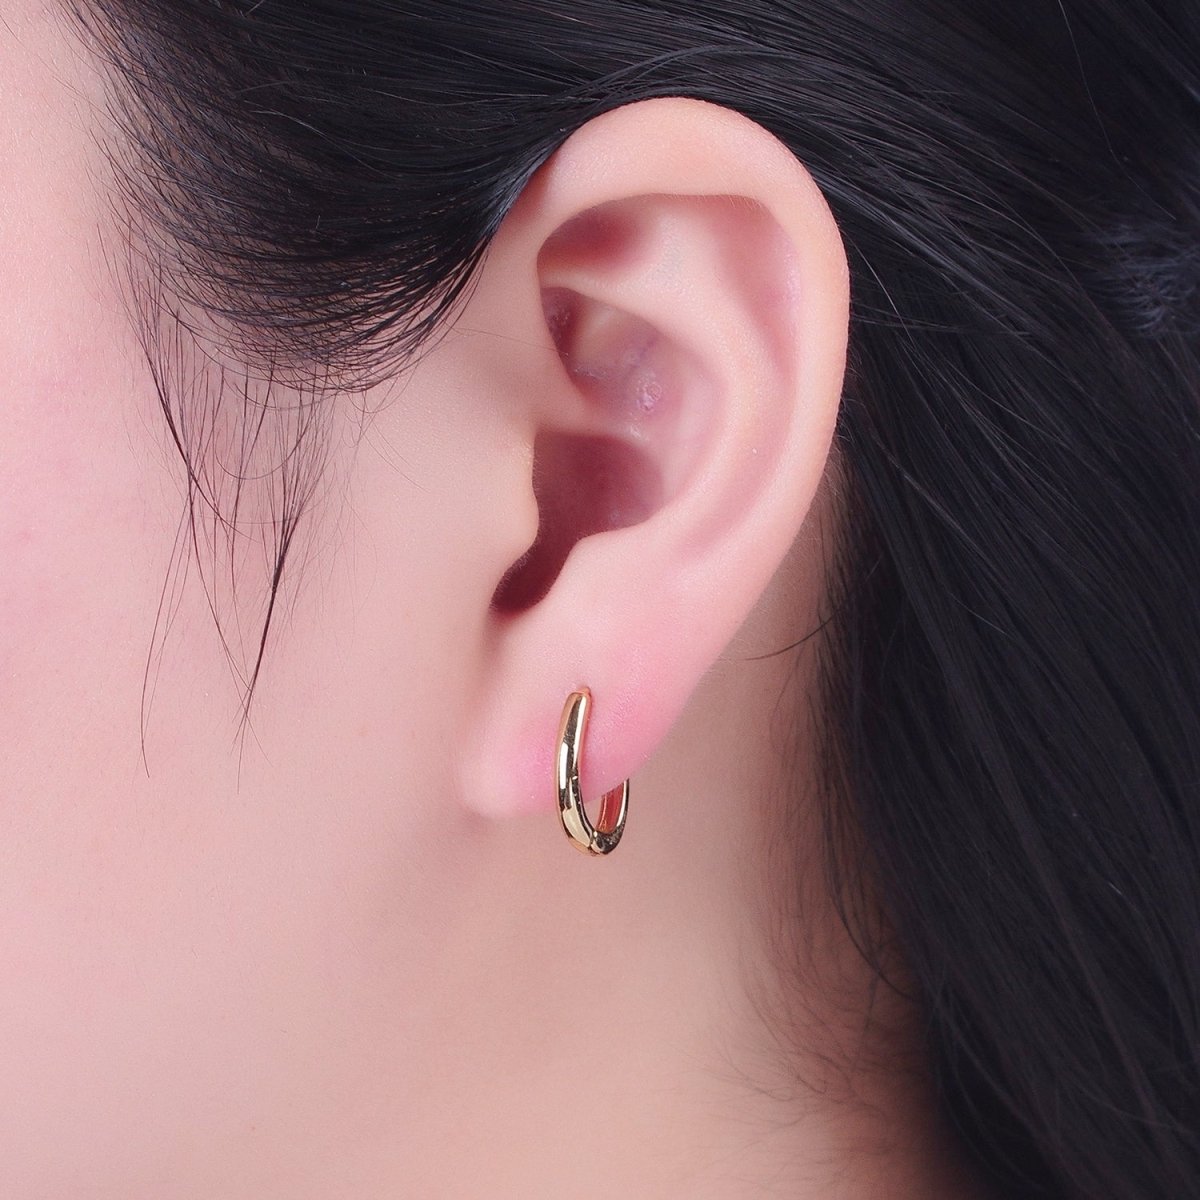 Minimalist Gold Oval U Shaped Huggie Oblong Hoops Earrings | P-304 - DLUXCA